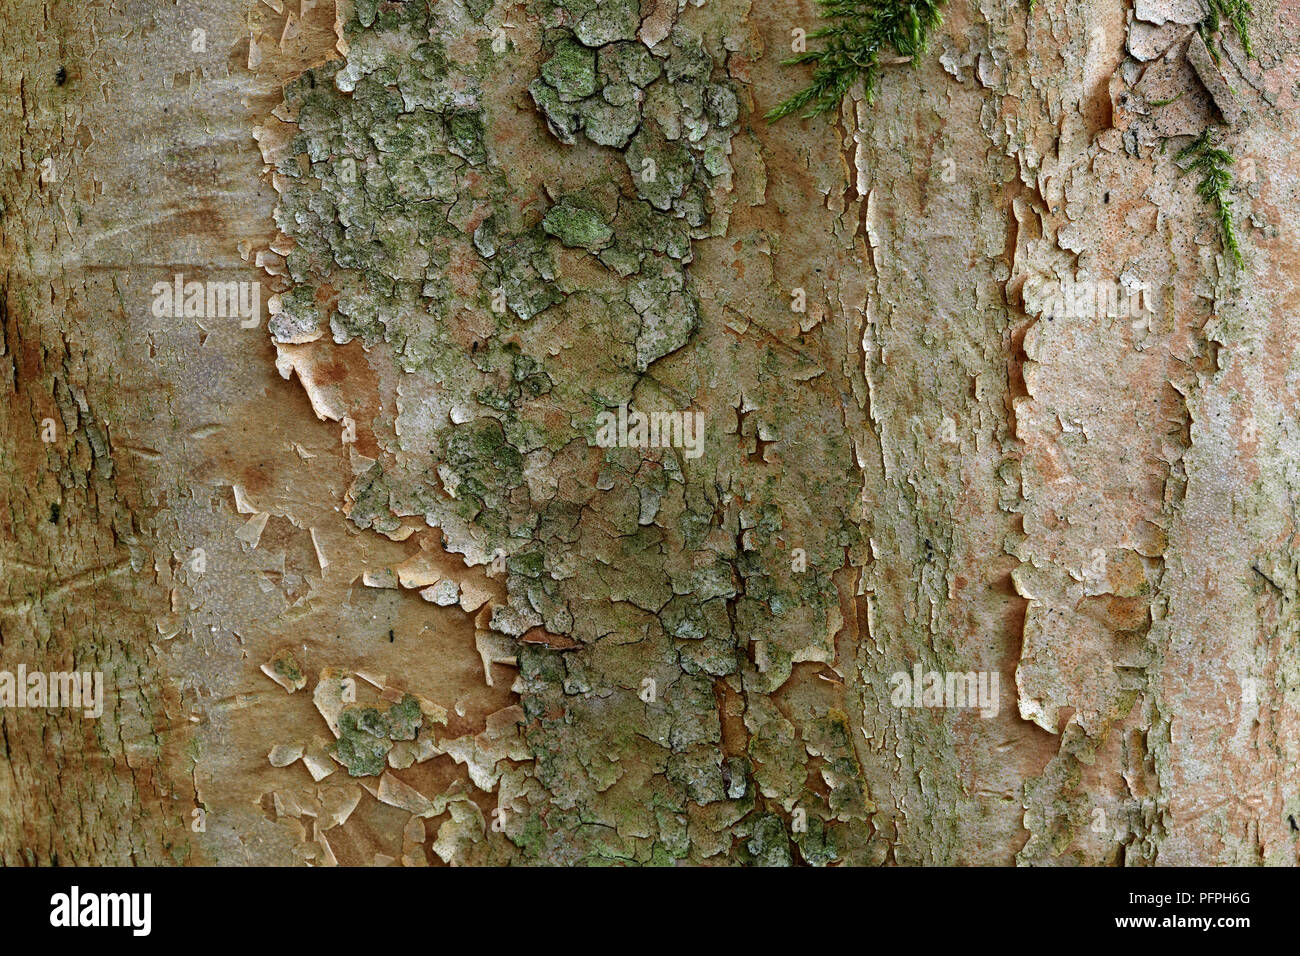 Stewartia sinensis (stewartia cinese), close-up sulla corteccia Foto Stock